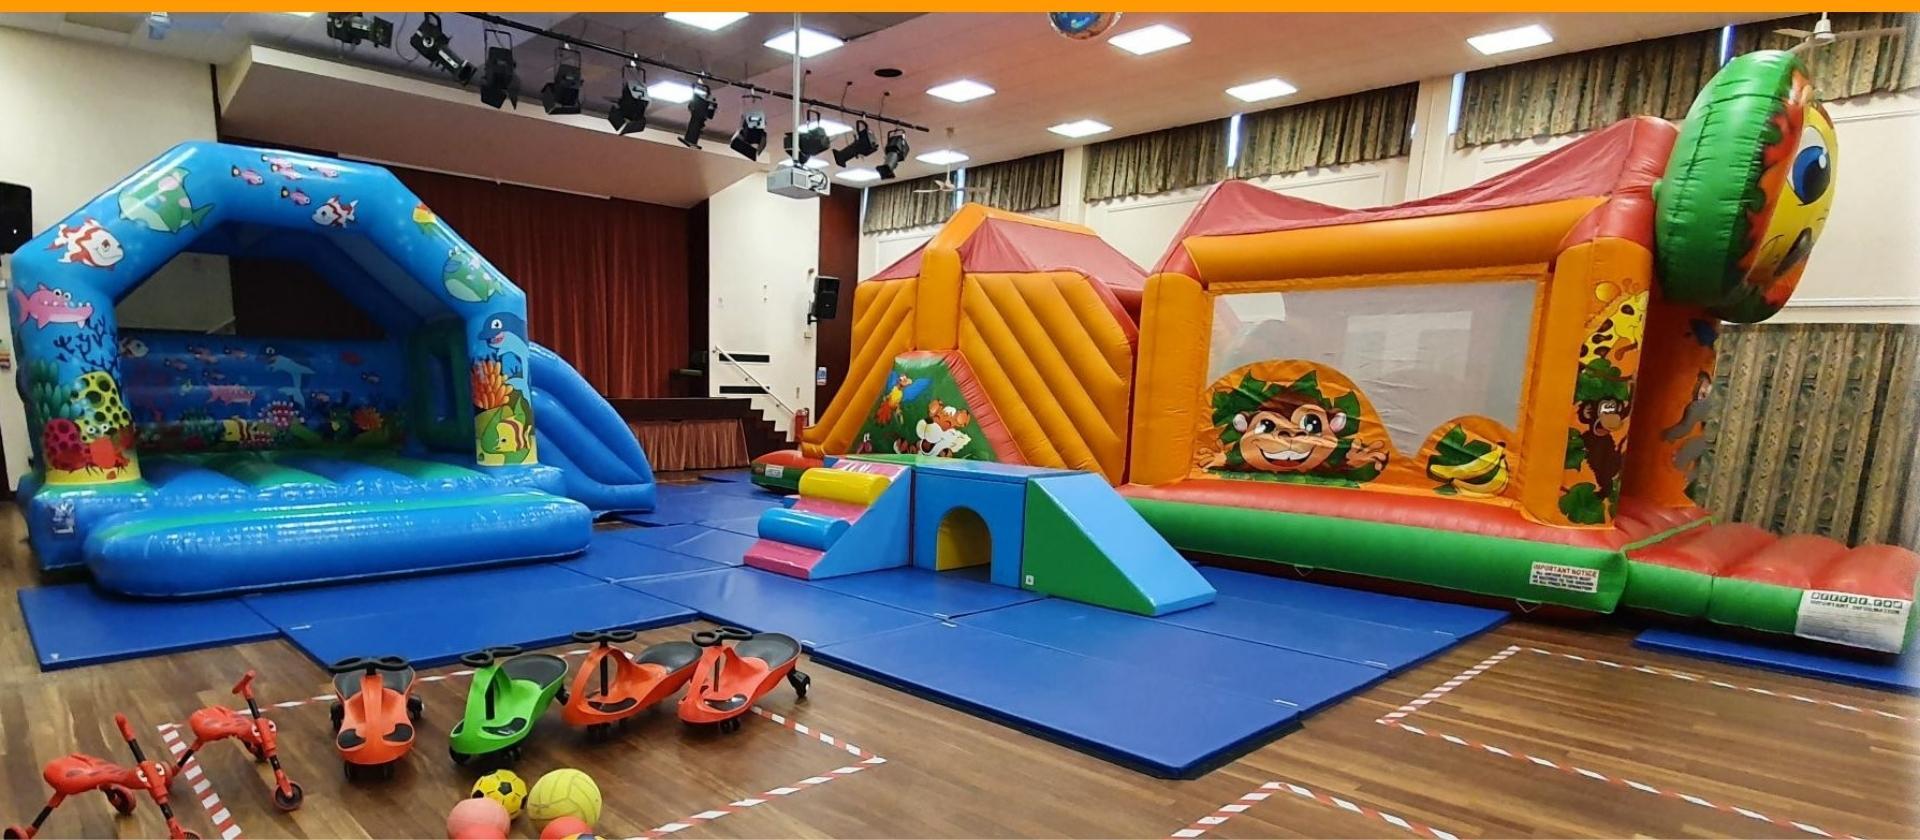 Atherstone leisure complex childrens birthday parties